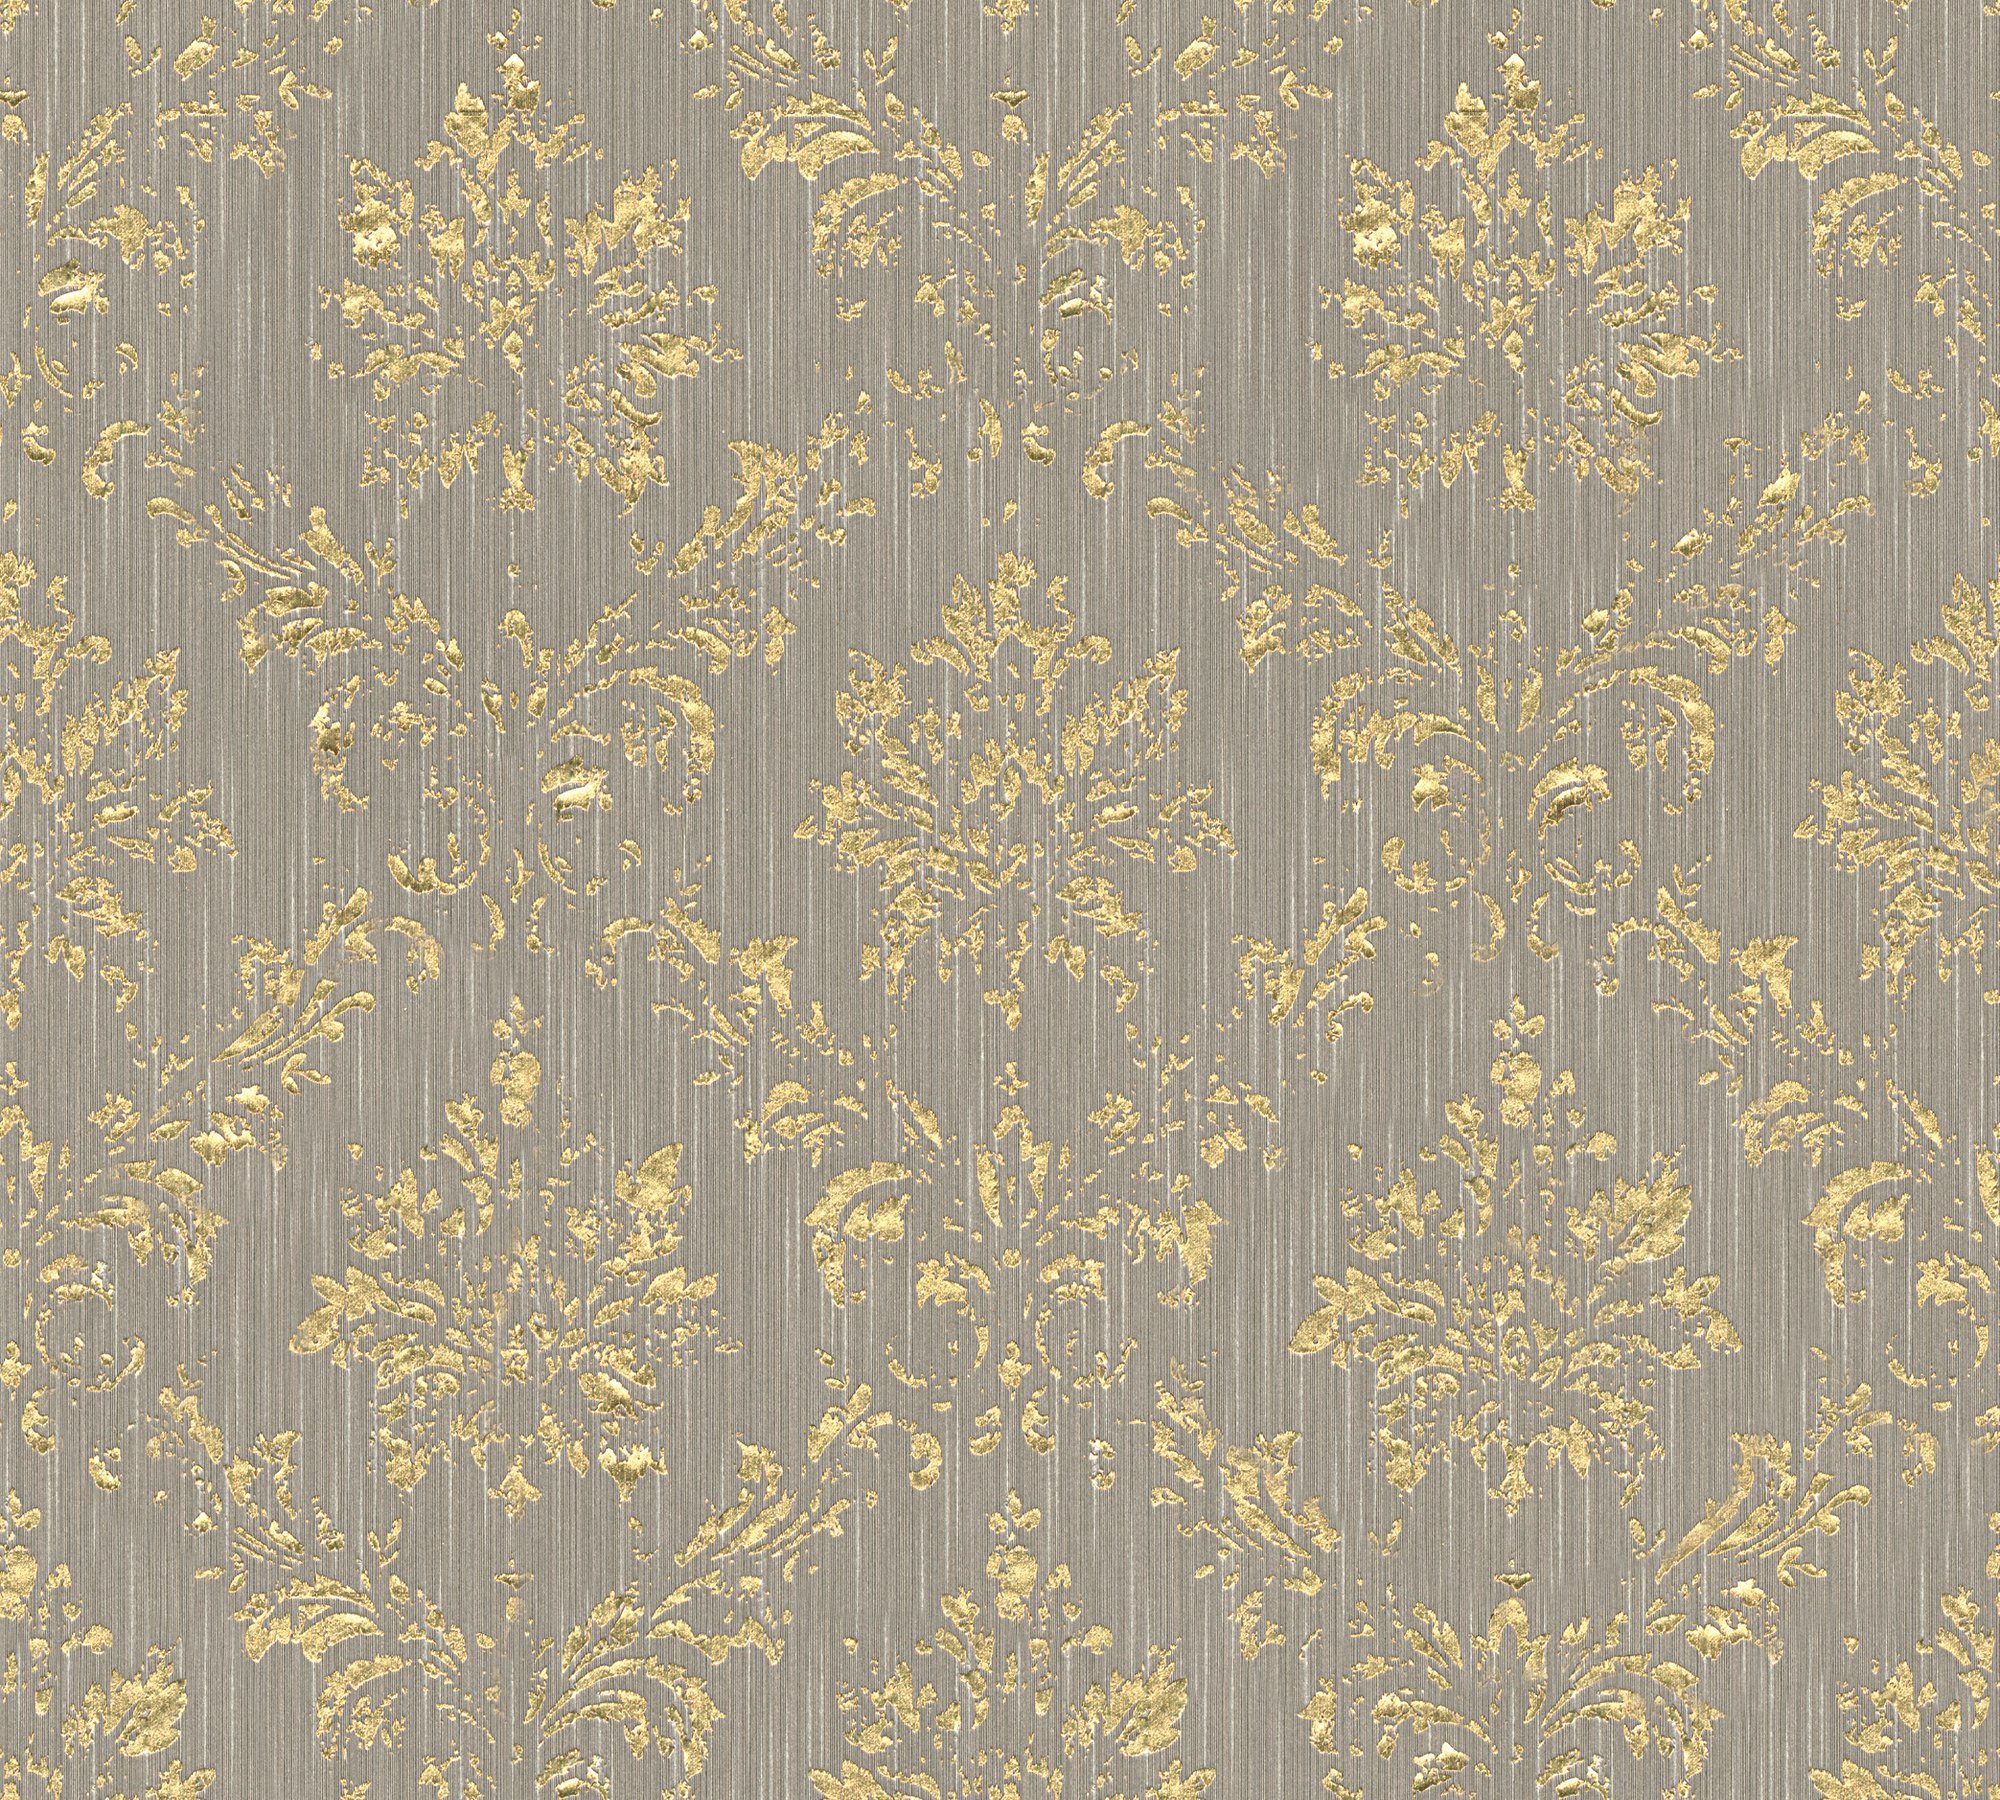 A.S. Création glänzend, samtig, Barock matt, Paper Architects Metallic Silk, gold/beige Textiltapete Barock, Ornament Tapete